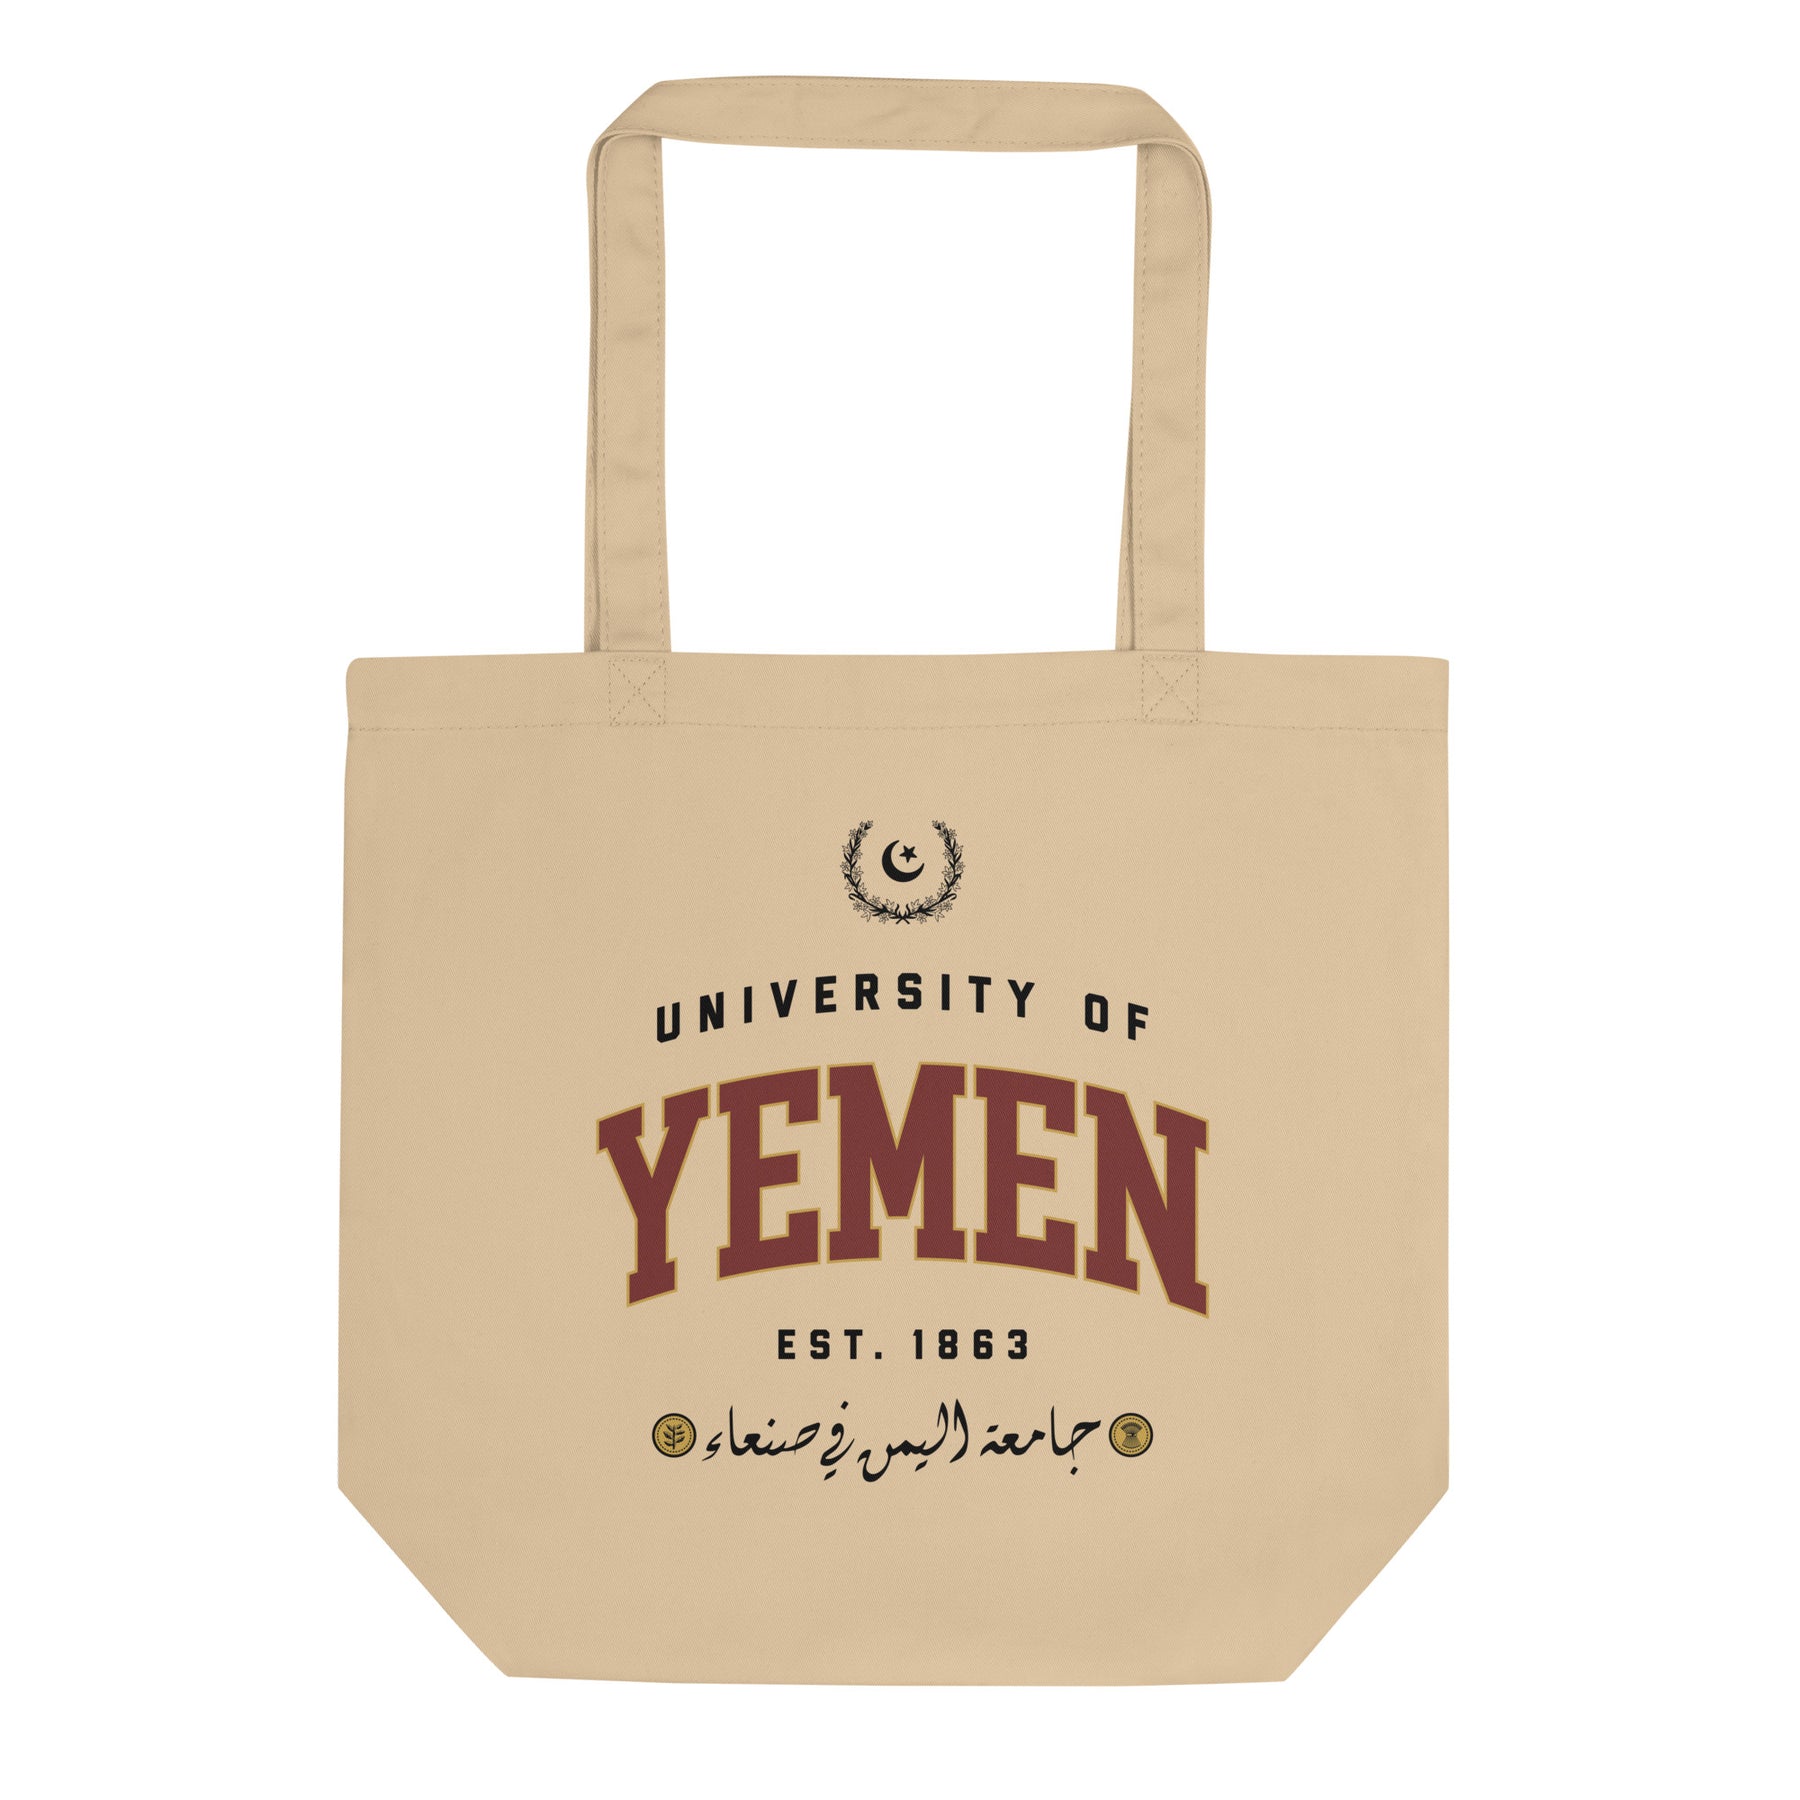 University of Yemen - Tote